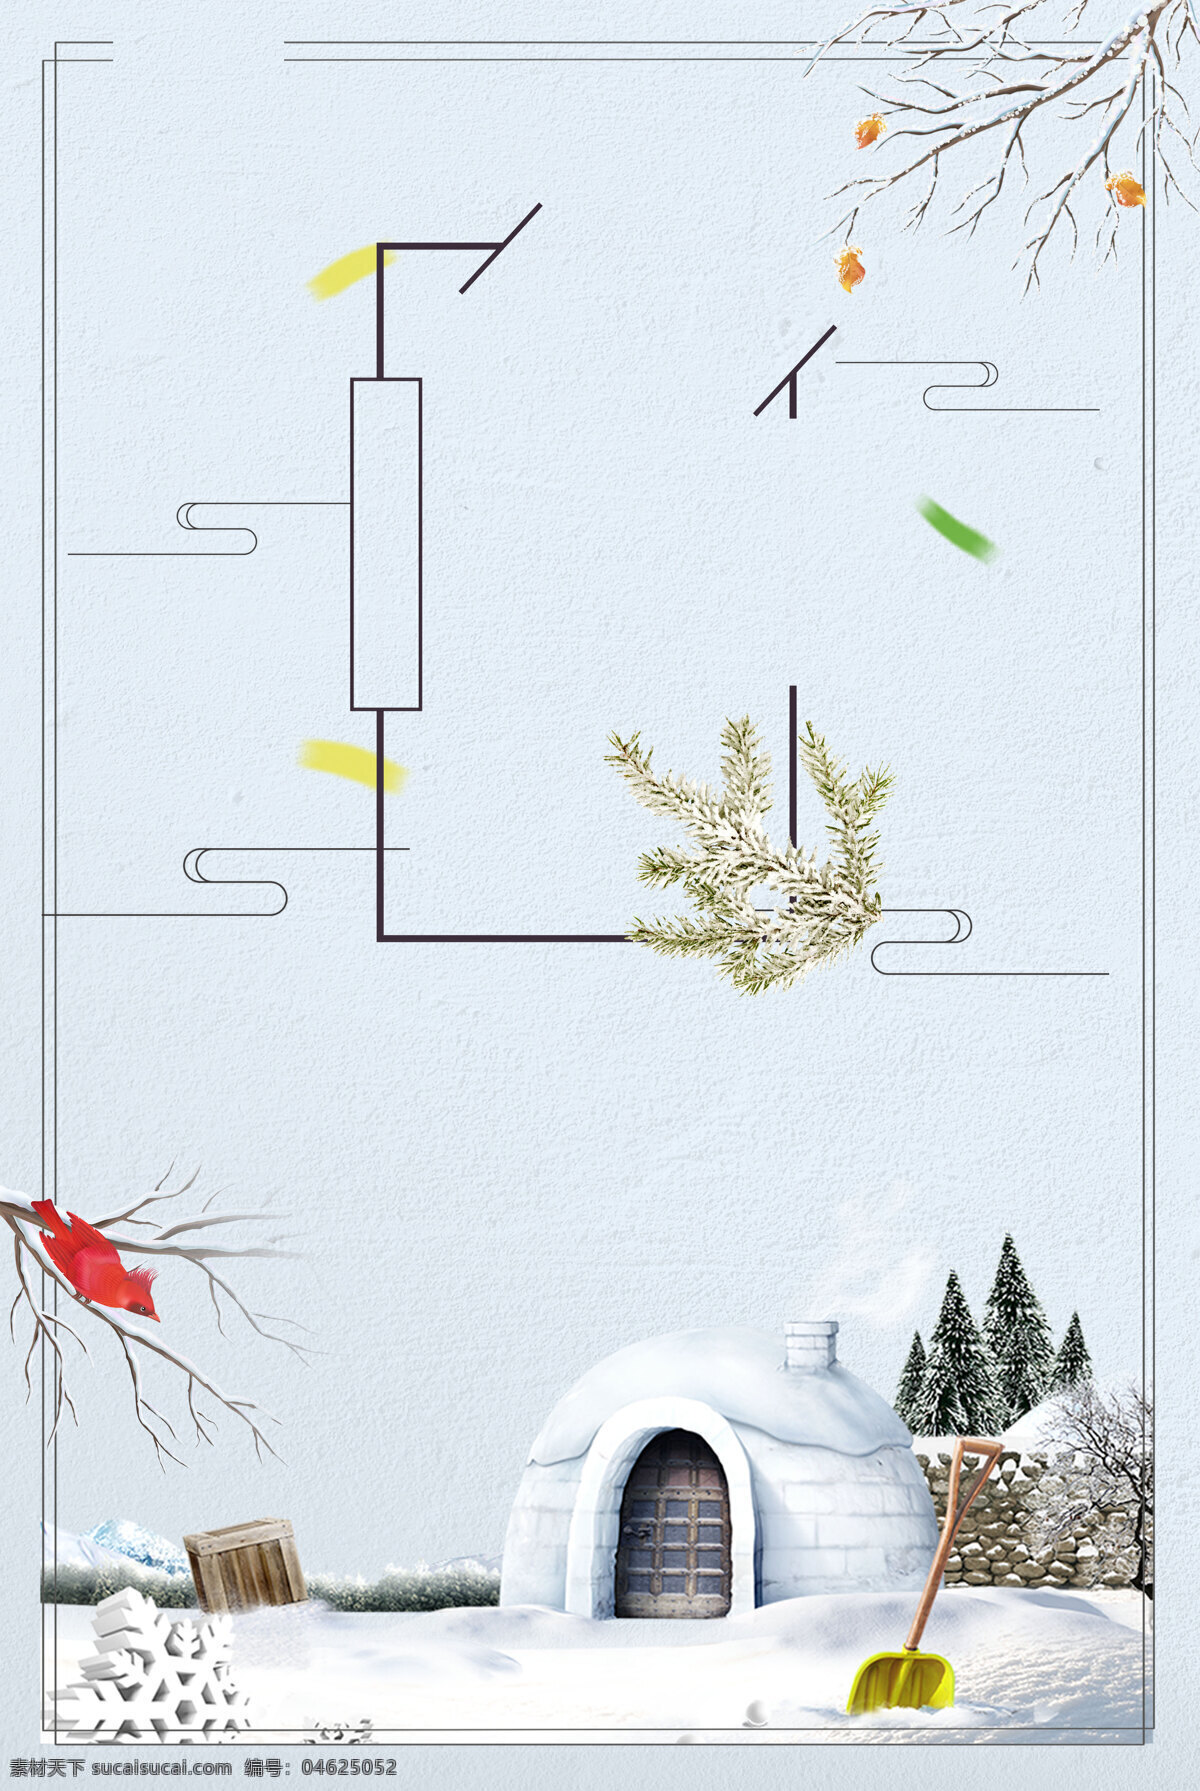 中国 风 冬季 冰 屋 背景 简约 线条 边框 中国风 树林 冰屋 海报 广告